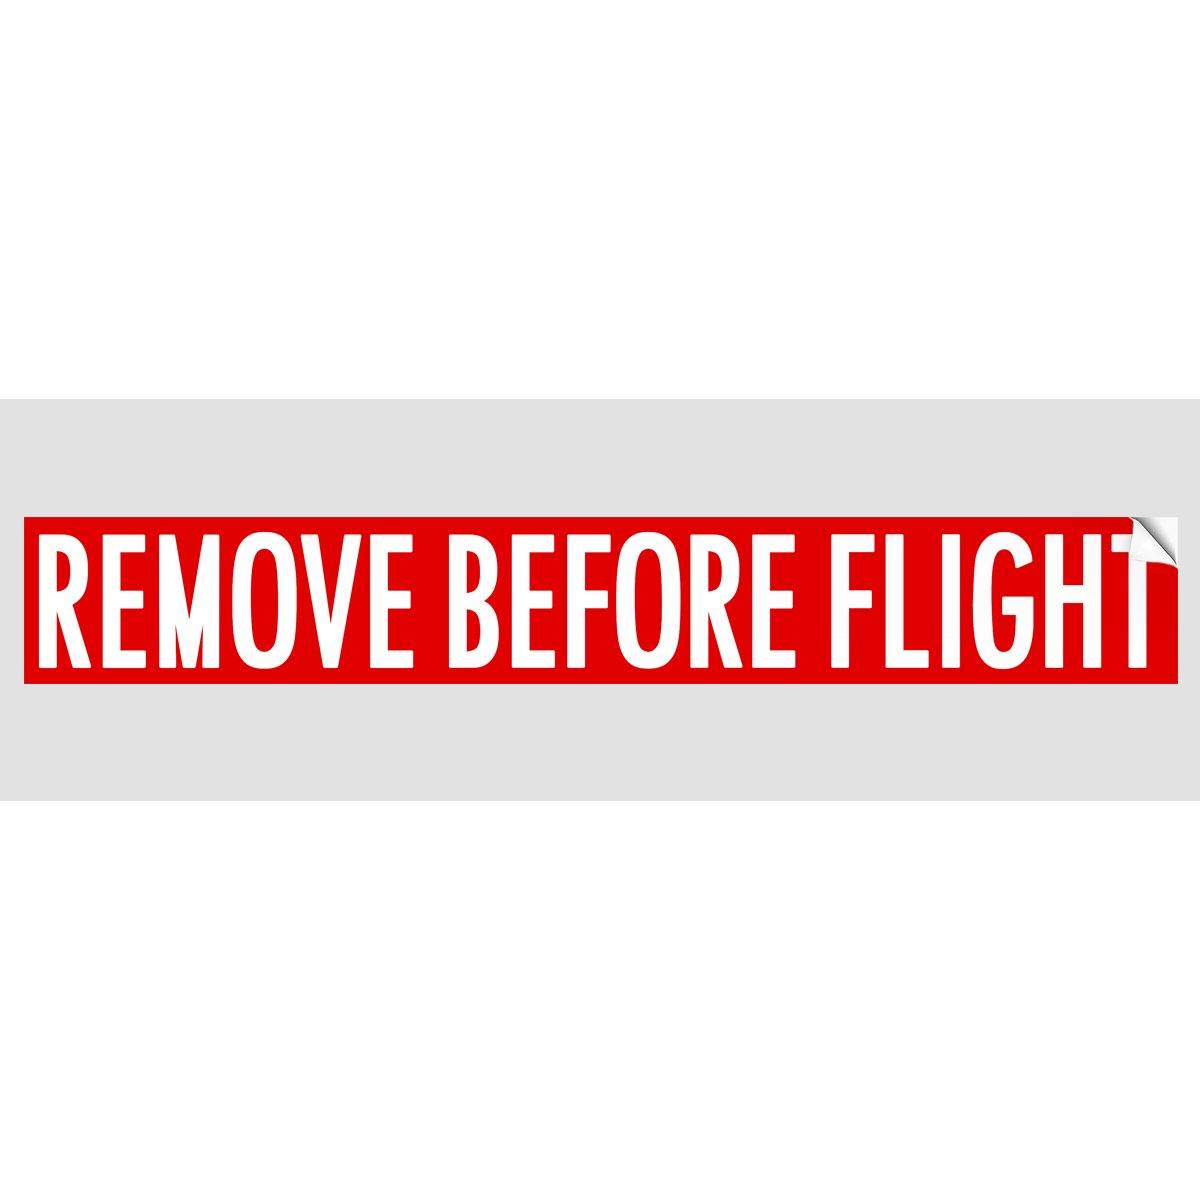 Remove before flight - Wikipedia